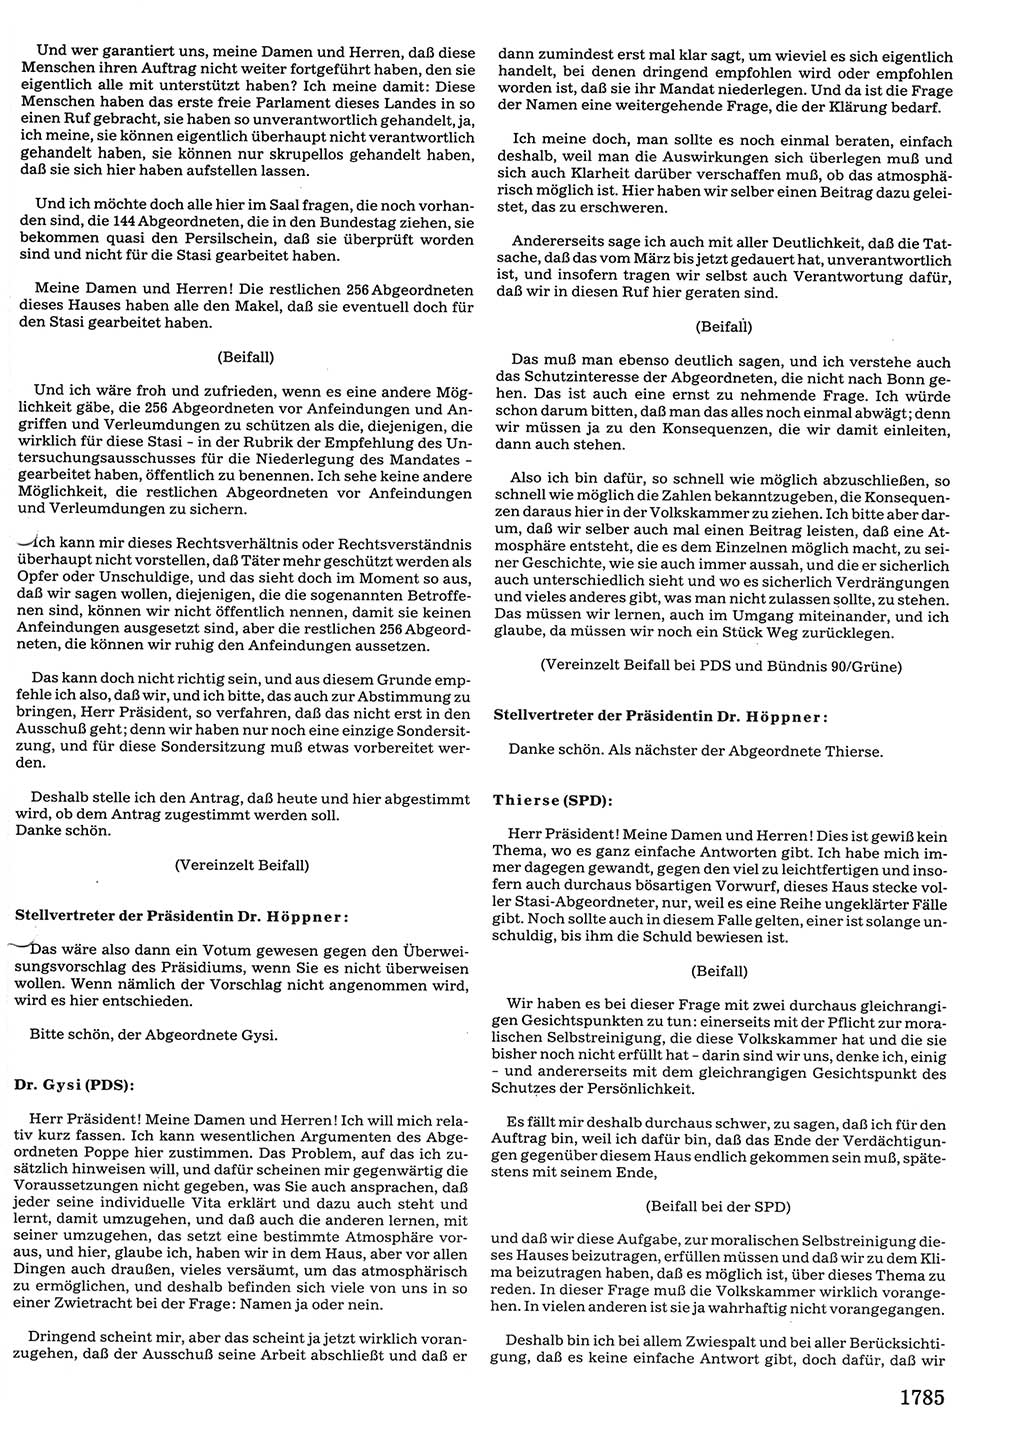 Tagungen der Volkskammer (VK) der Deutschen Demokratischen Republik (DDR), 10. Wahlperiode 1990, Seite 1785 (VK. DDR 10. WP. 1990, Prot. Tg. 1-38, 5.4.-2.10.1990, S. 1785)